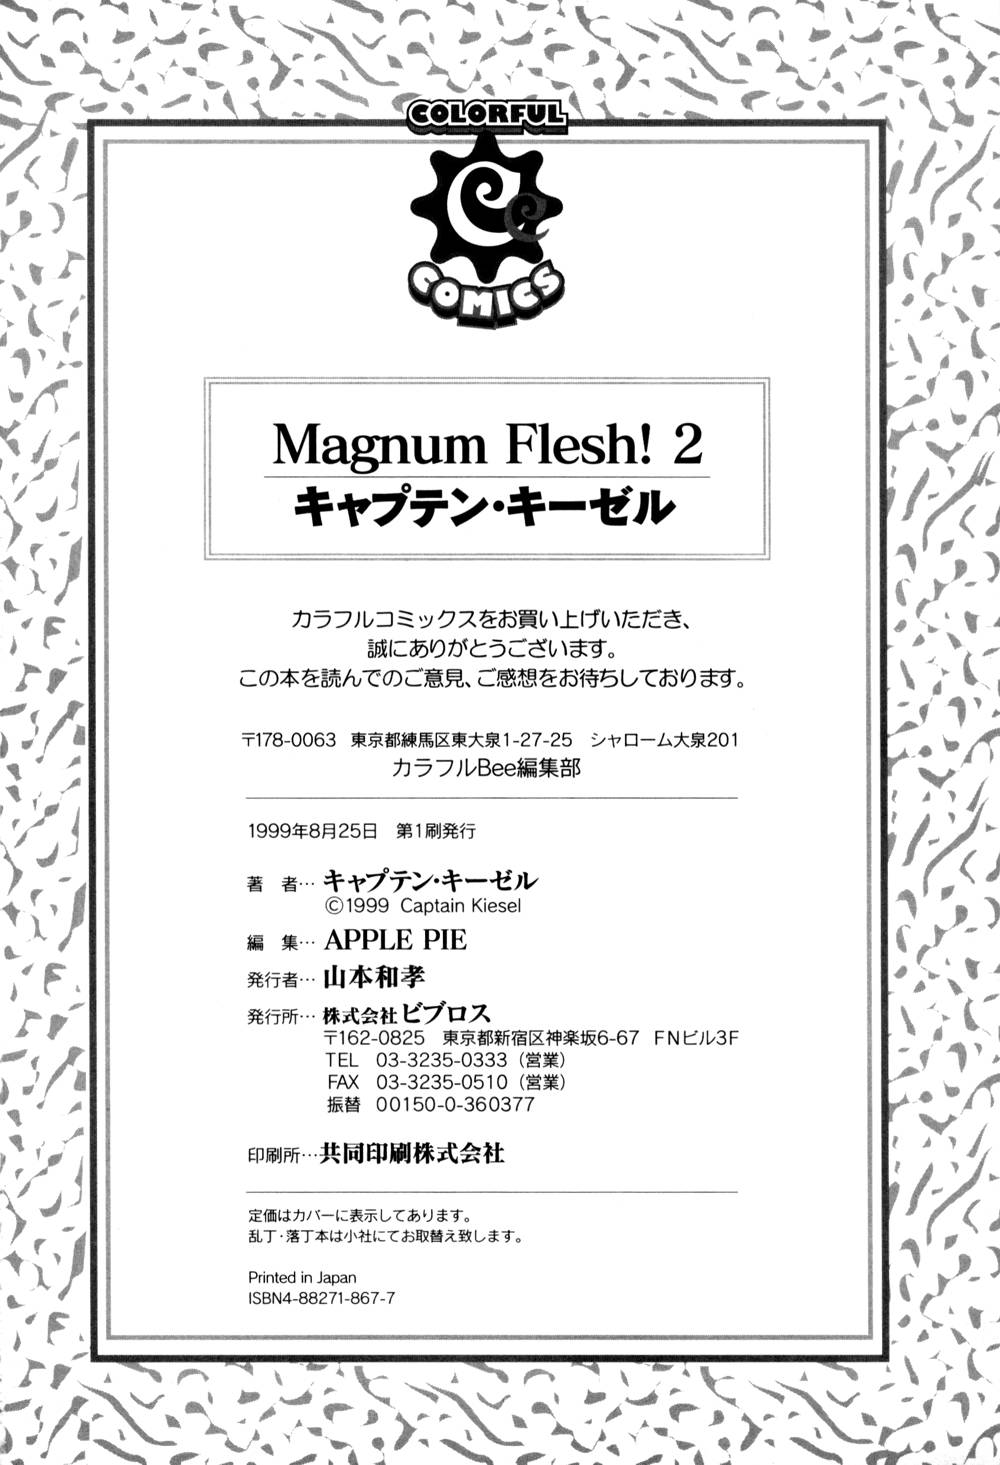 [キャプテン キーゼル]Magnum Flesh! 2[J]